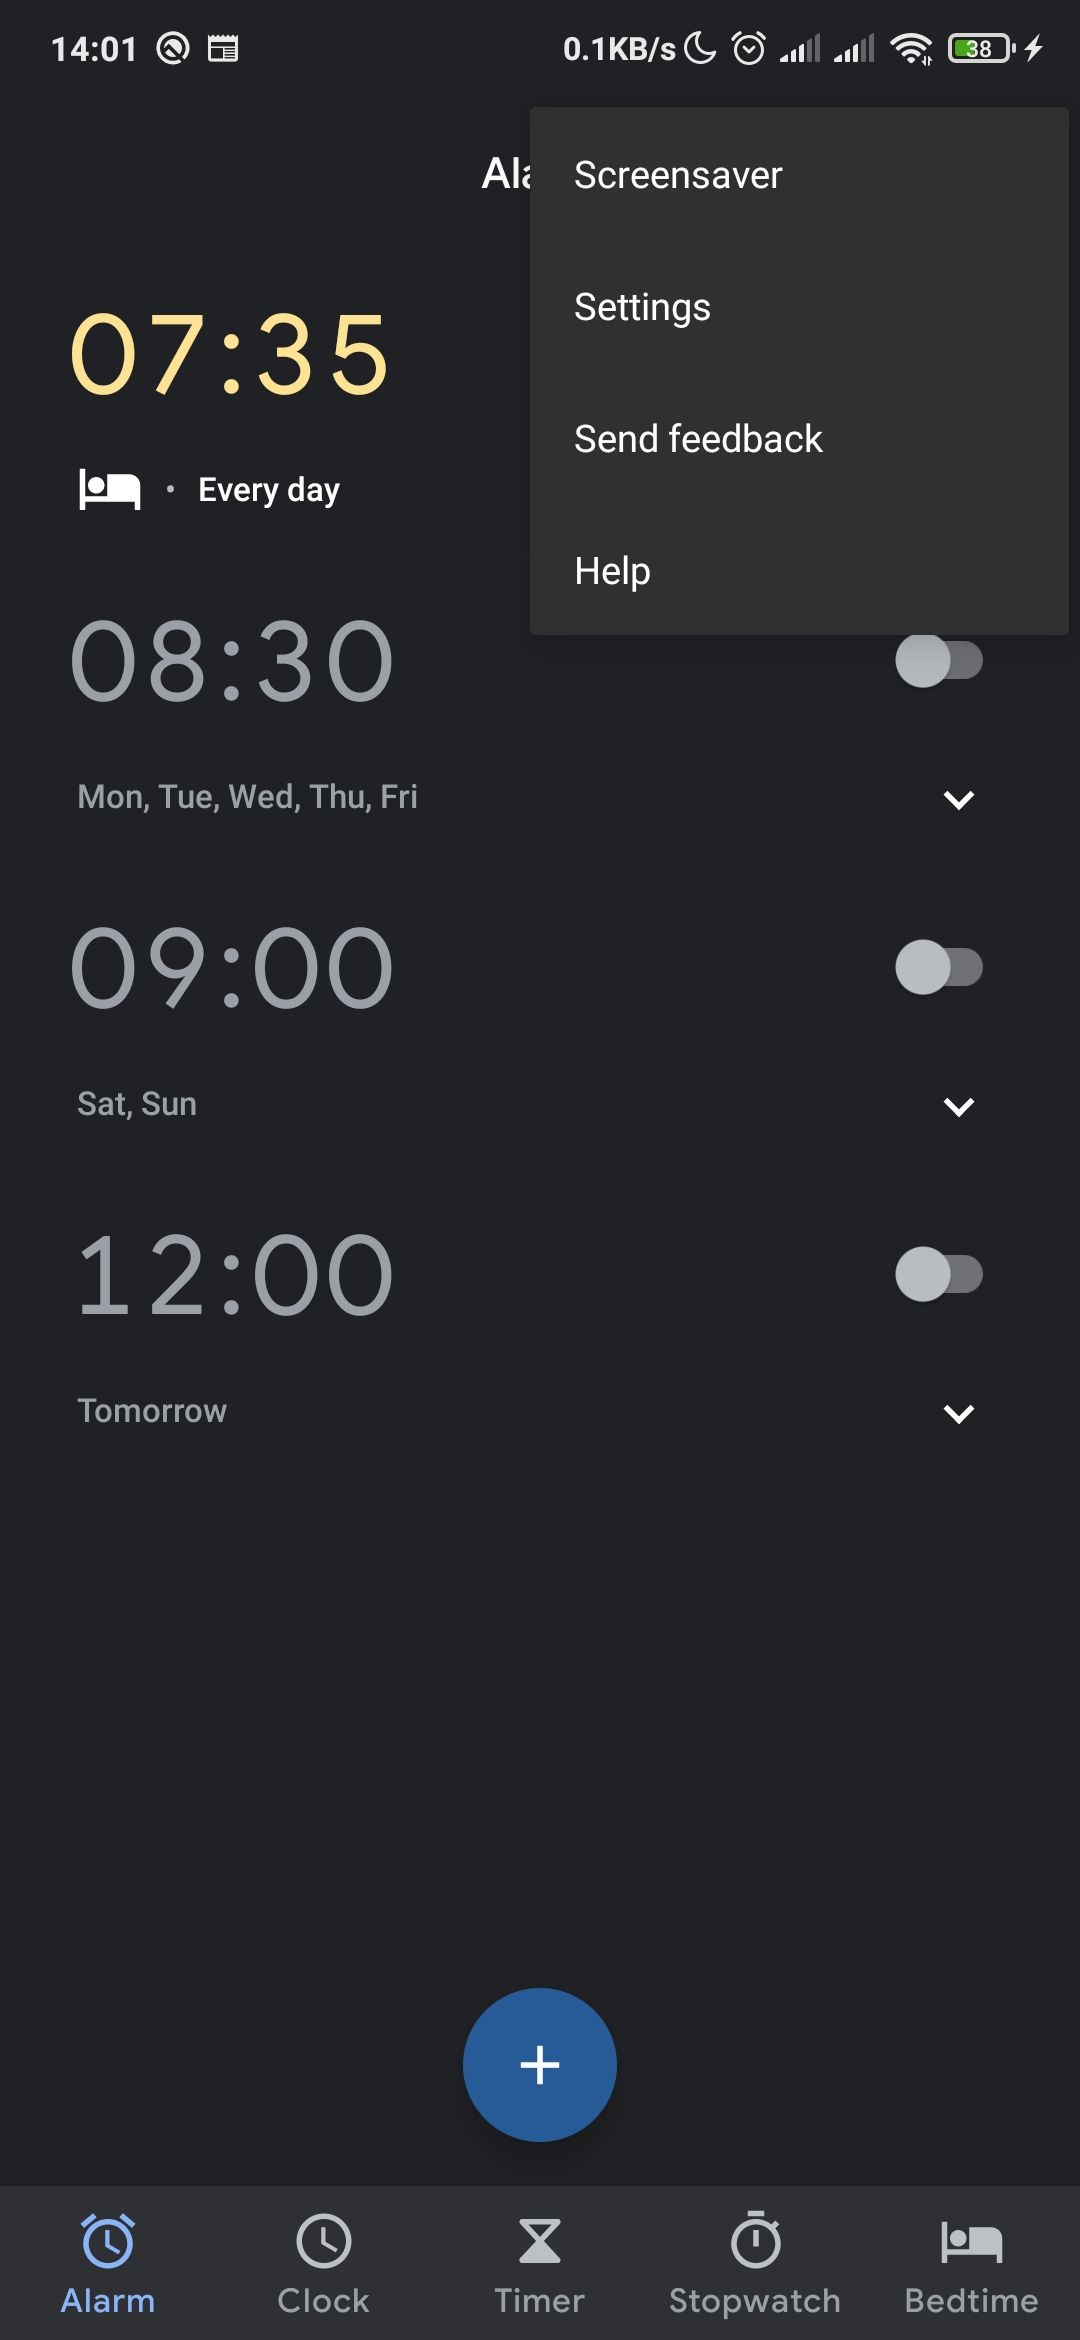 Google clock app settings menu